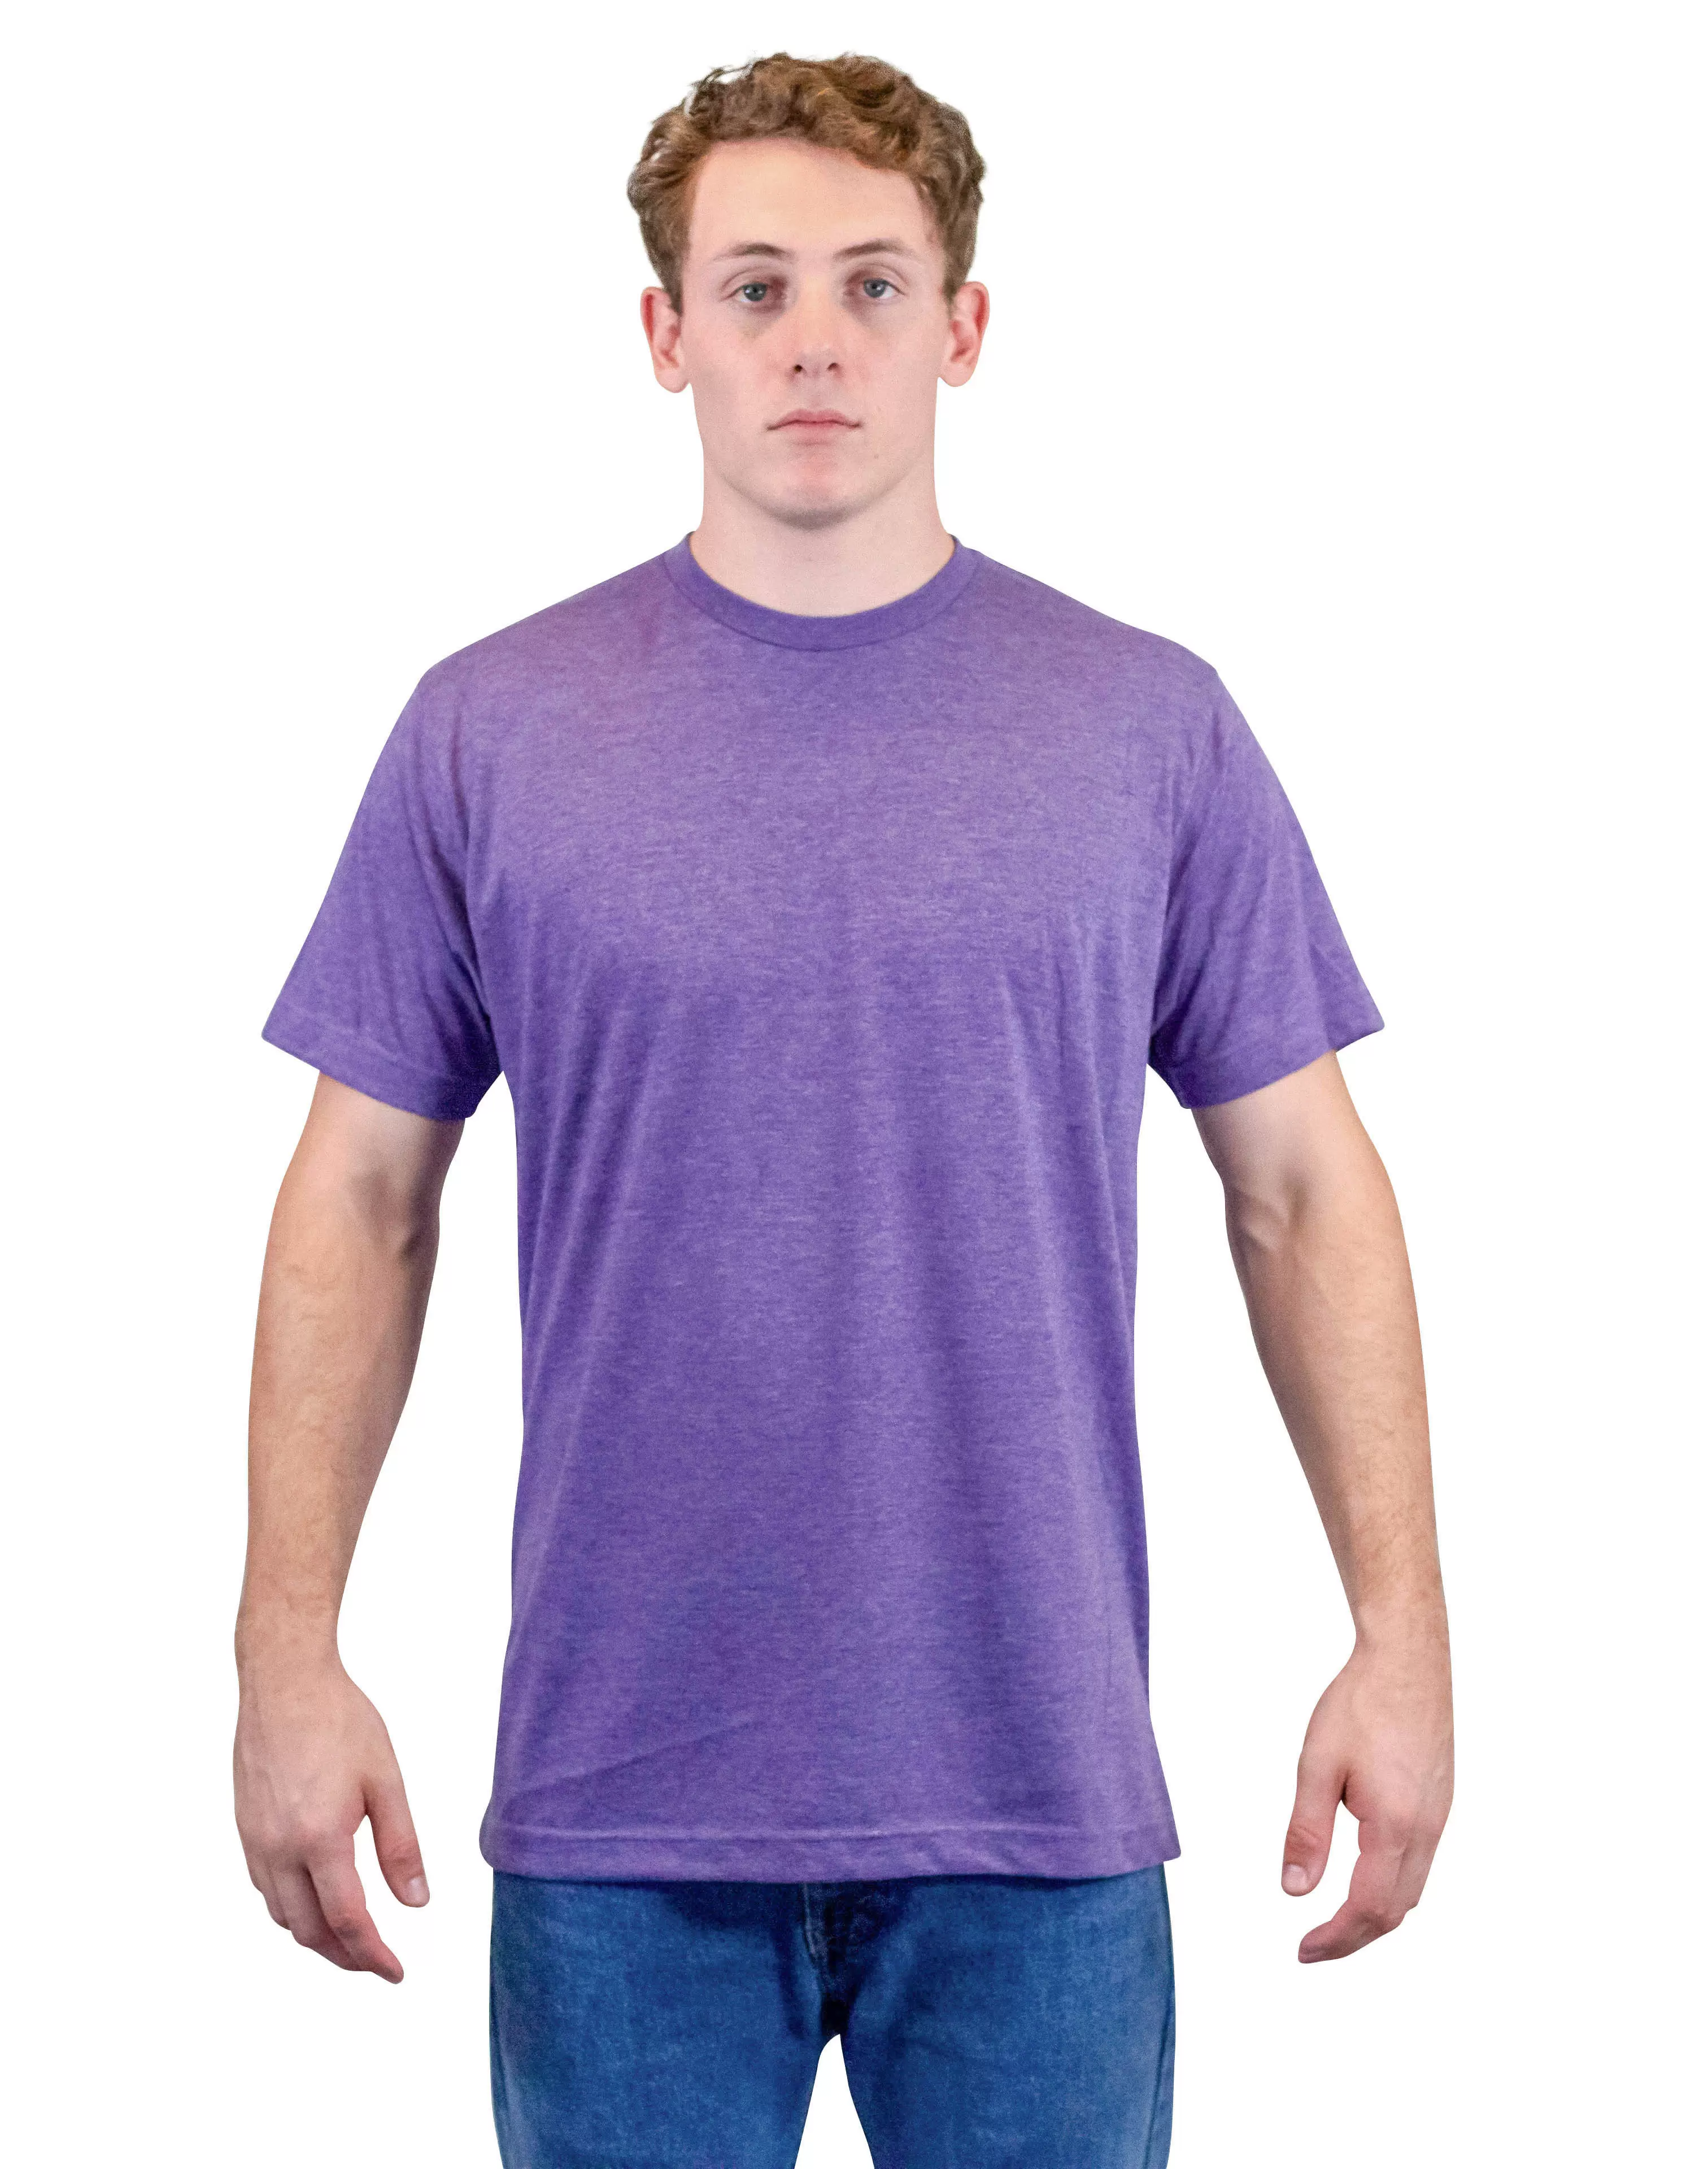 Heathered Shirt, Mens Wholesale Clothing 